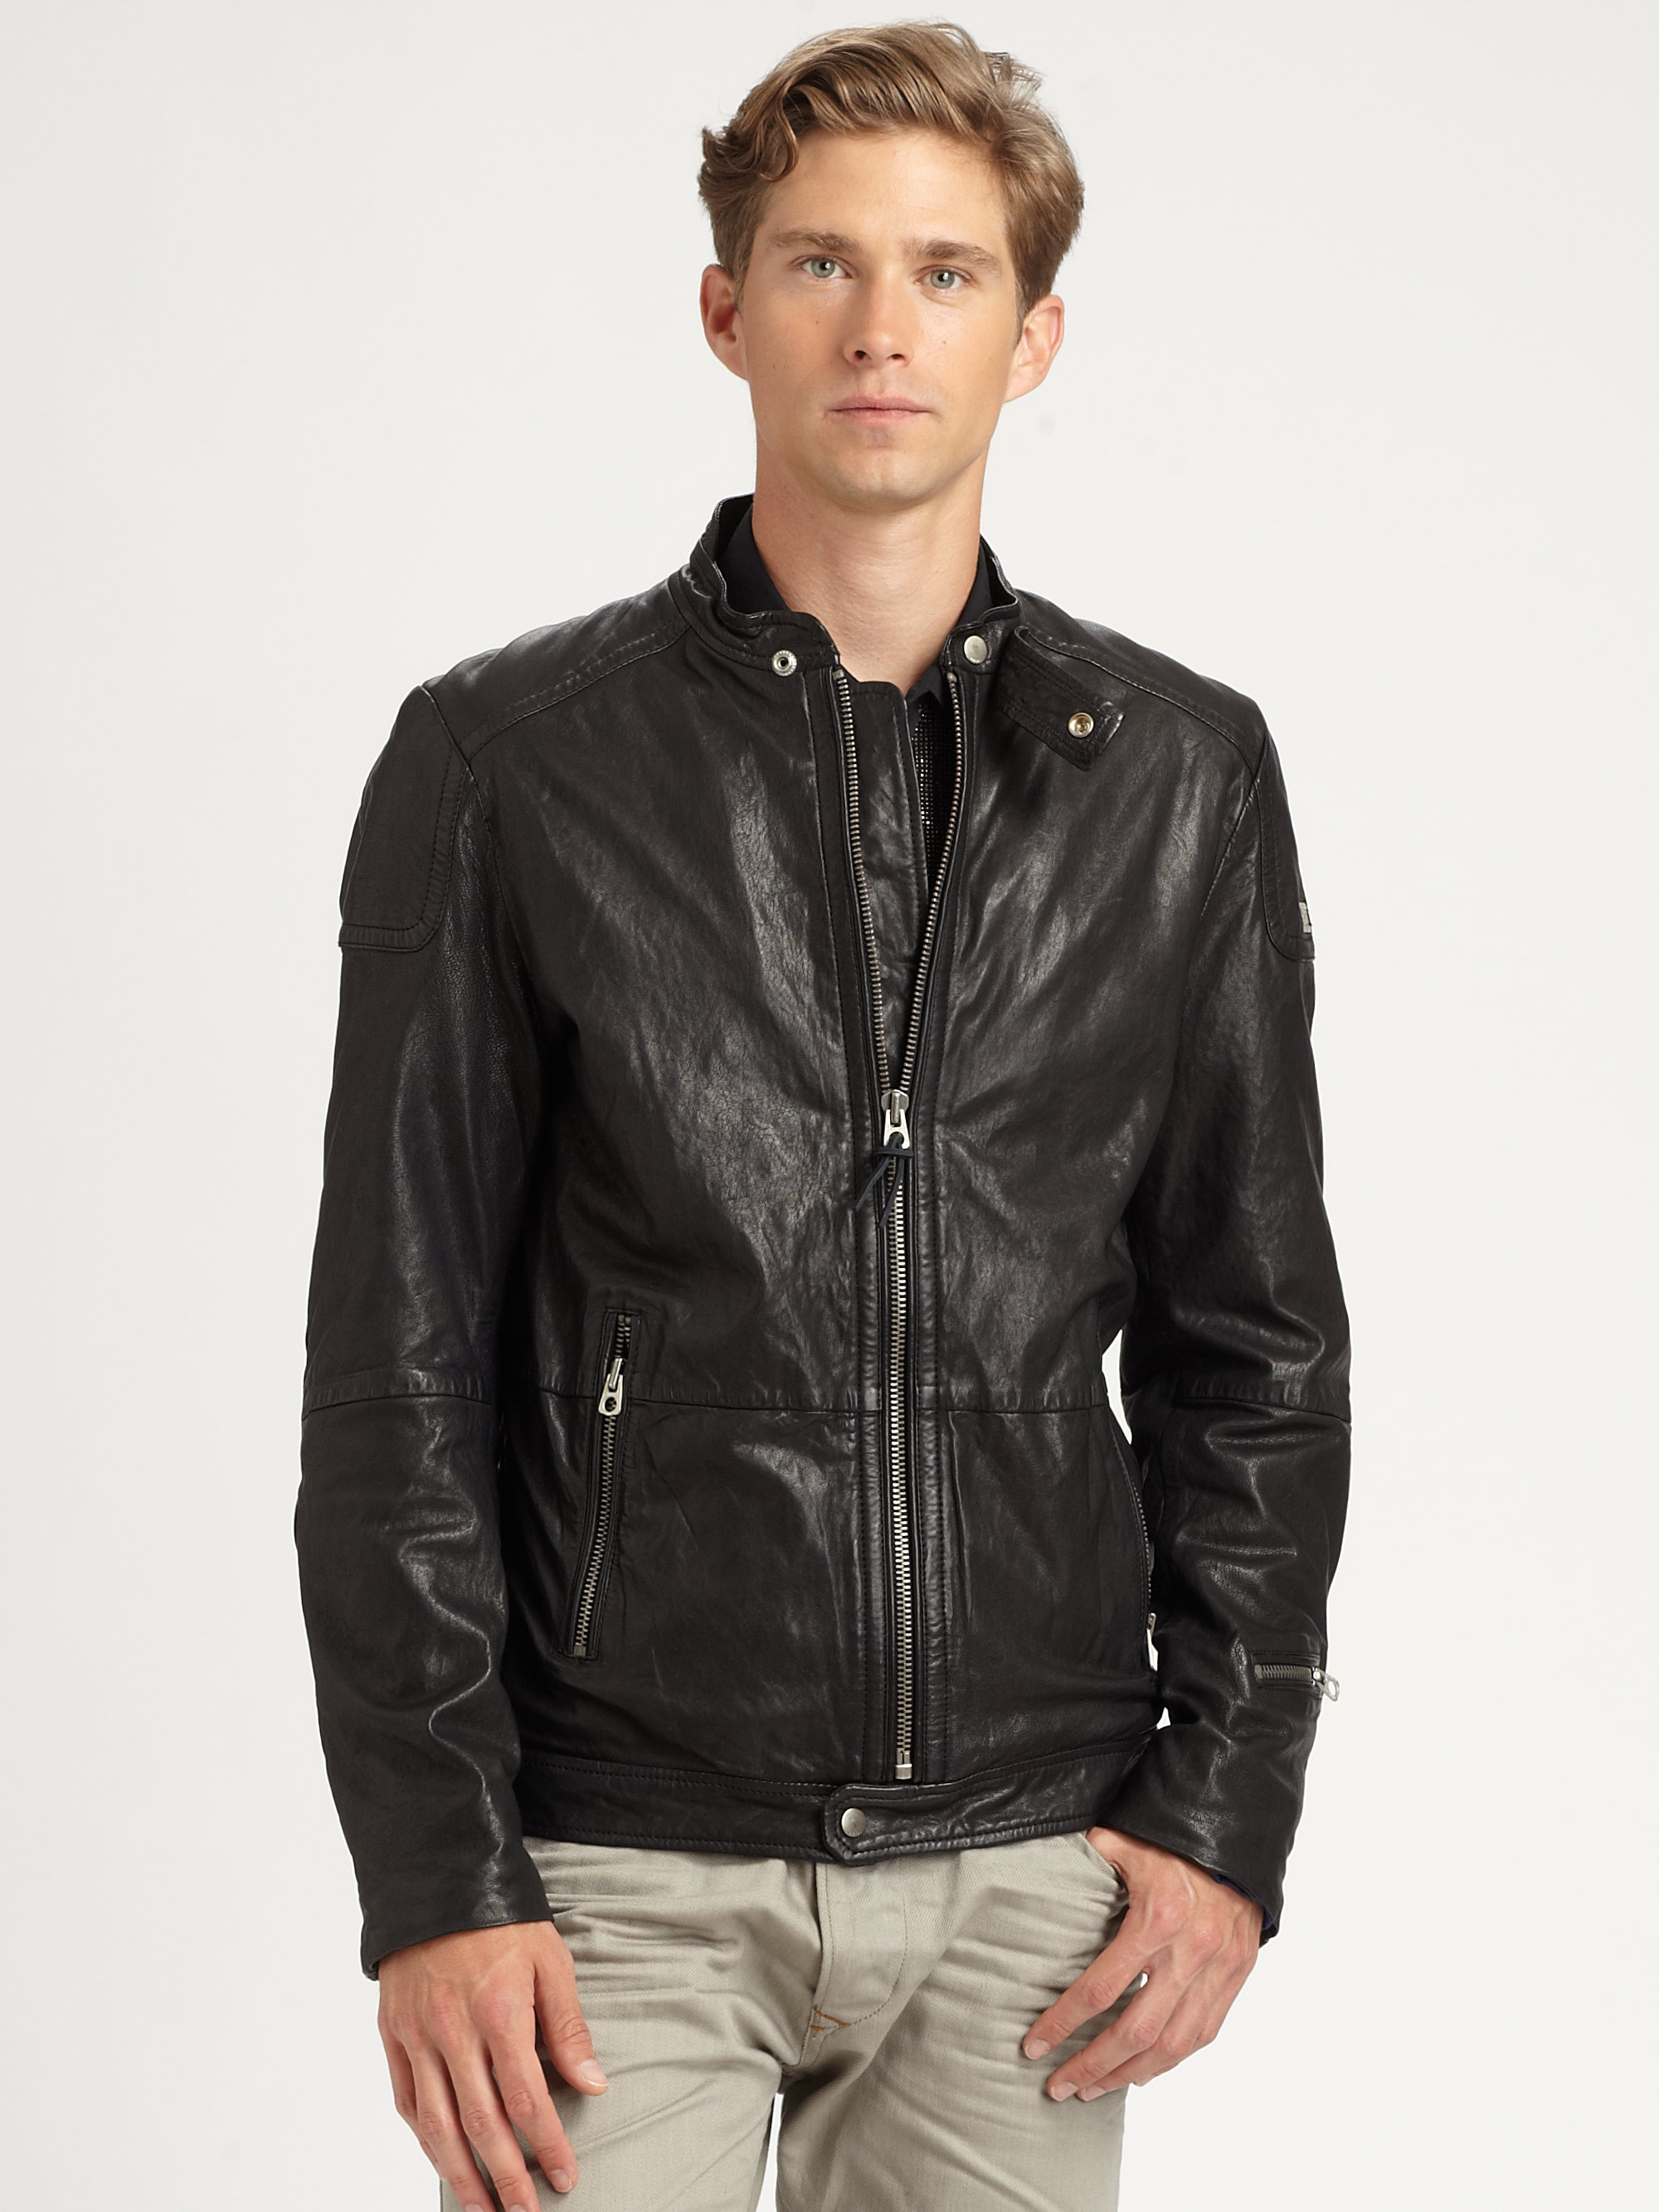 Diesel Lophophora Leather Jacket in Black for Men | Lyst